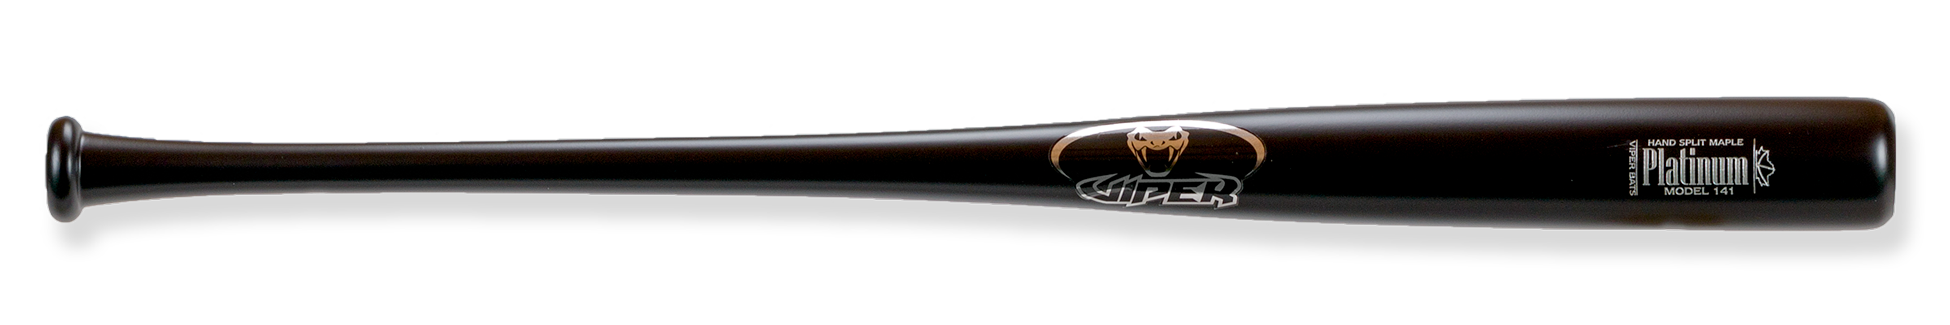 platinum 141 wood bat